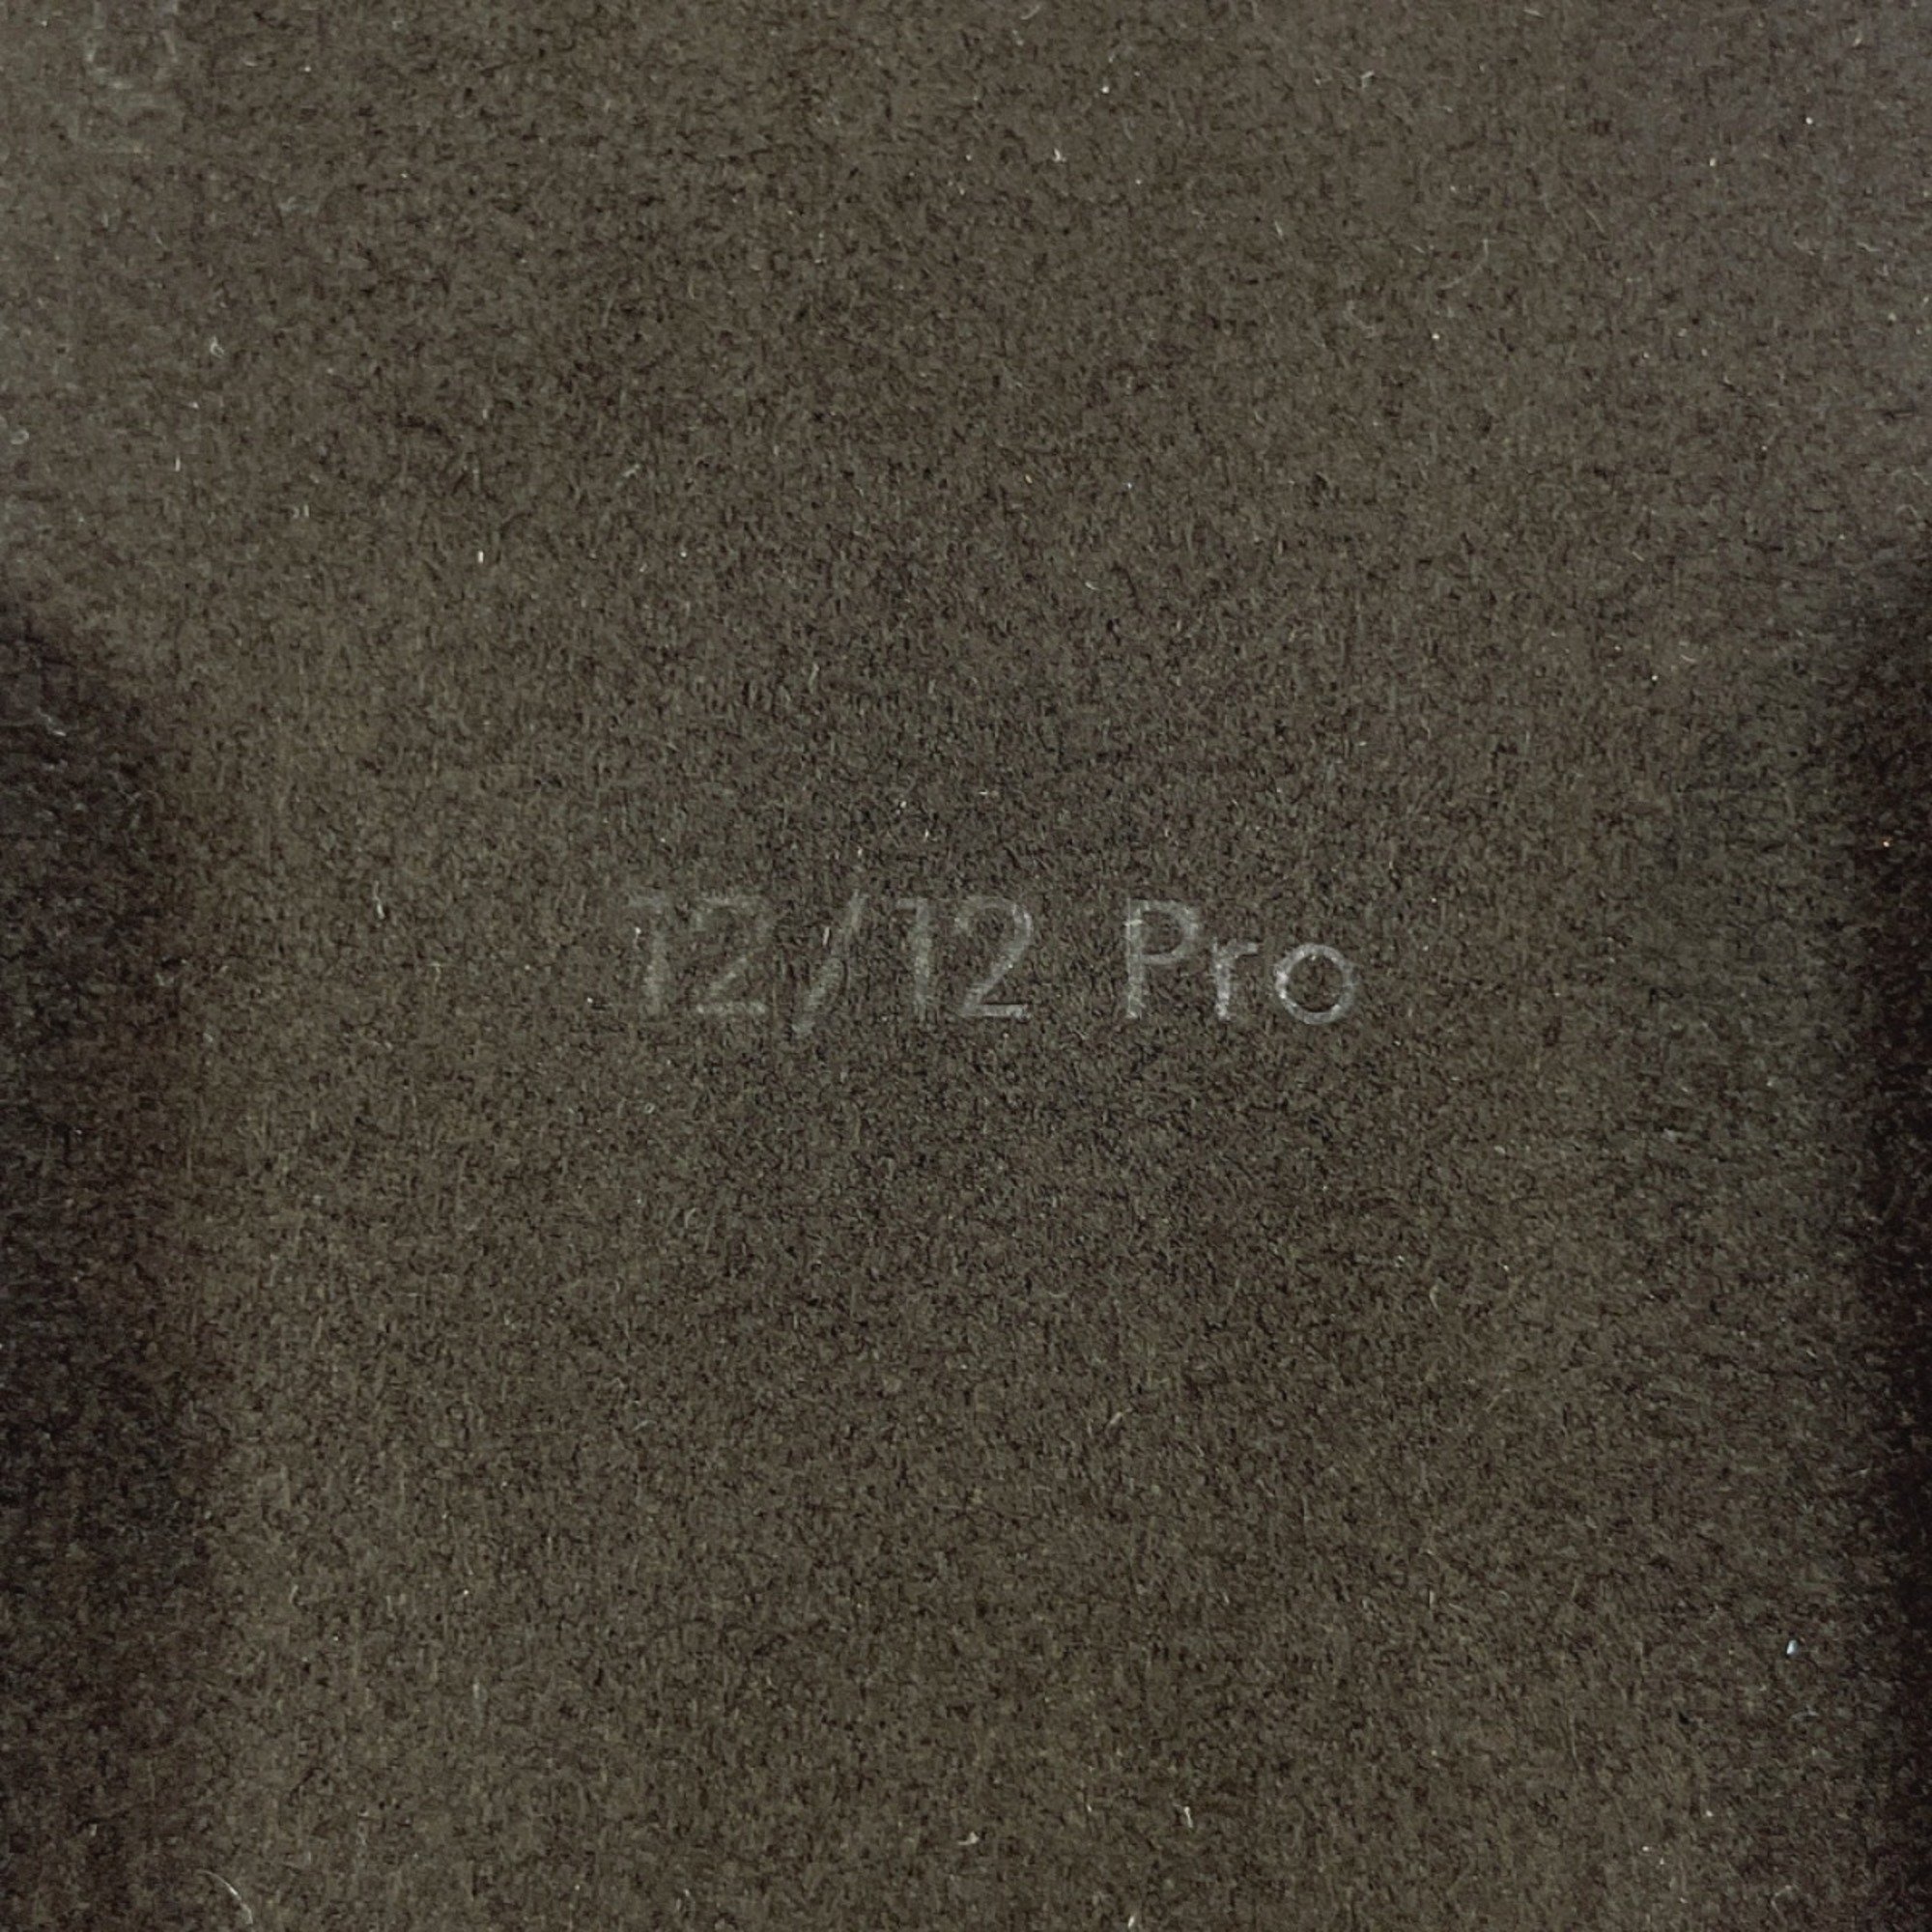 LOUIS VUITTON Louis Vuitton Bumper Dauphine 12/12 PRO iPhone Case M69782 Monogram Canvas/Leather Brown Women's